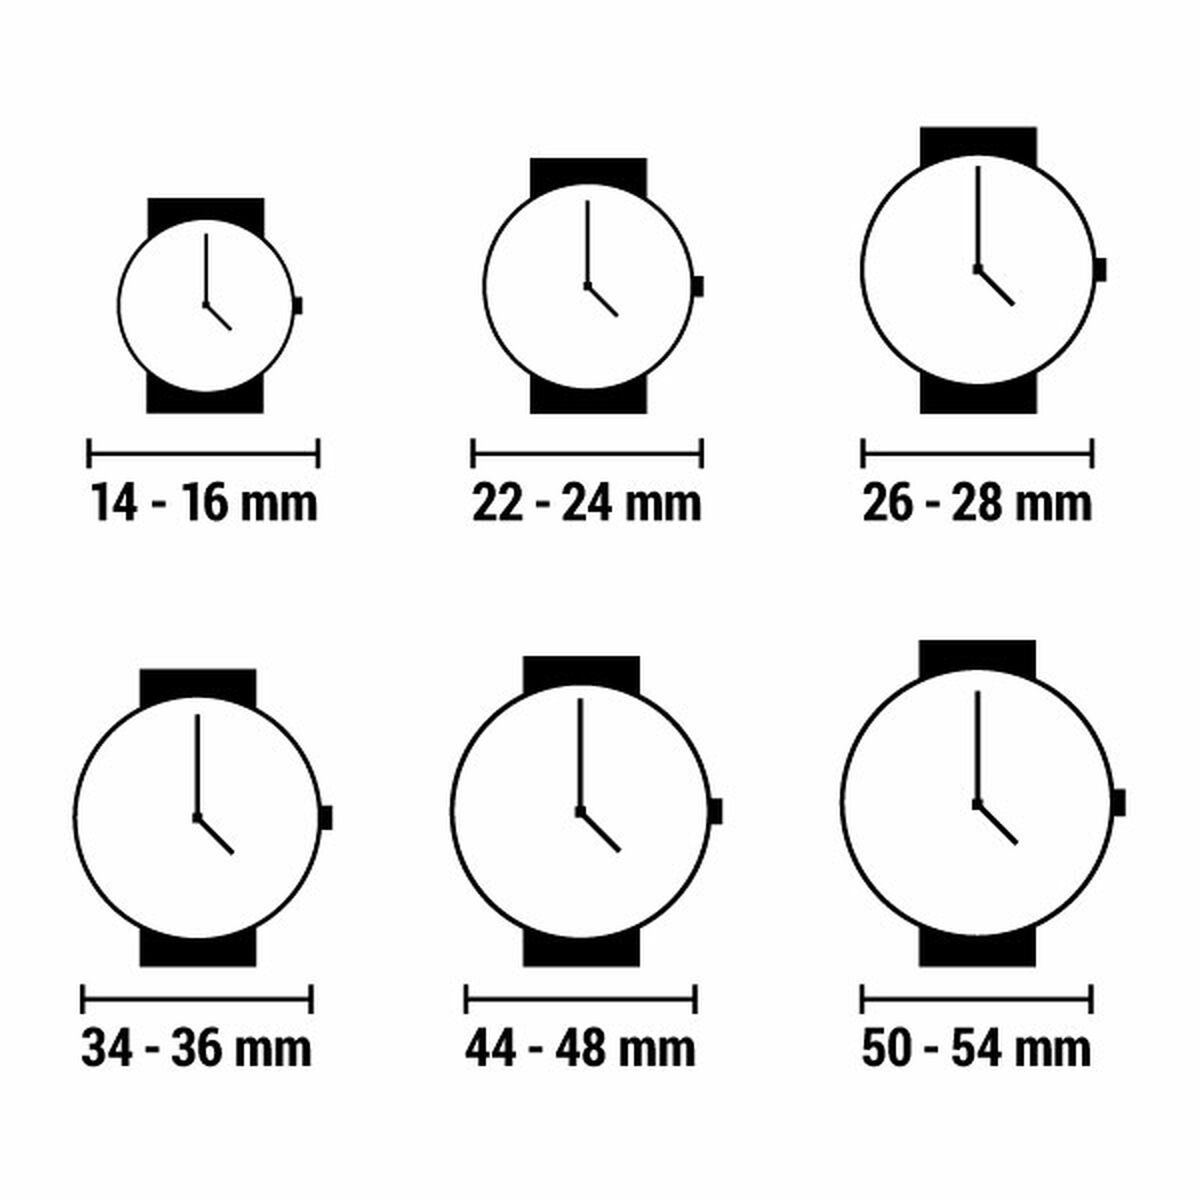 Horloge Dames Lorus RG204TX5